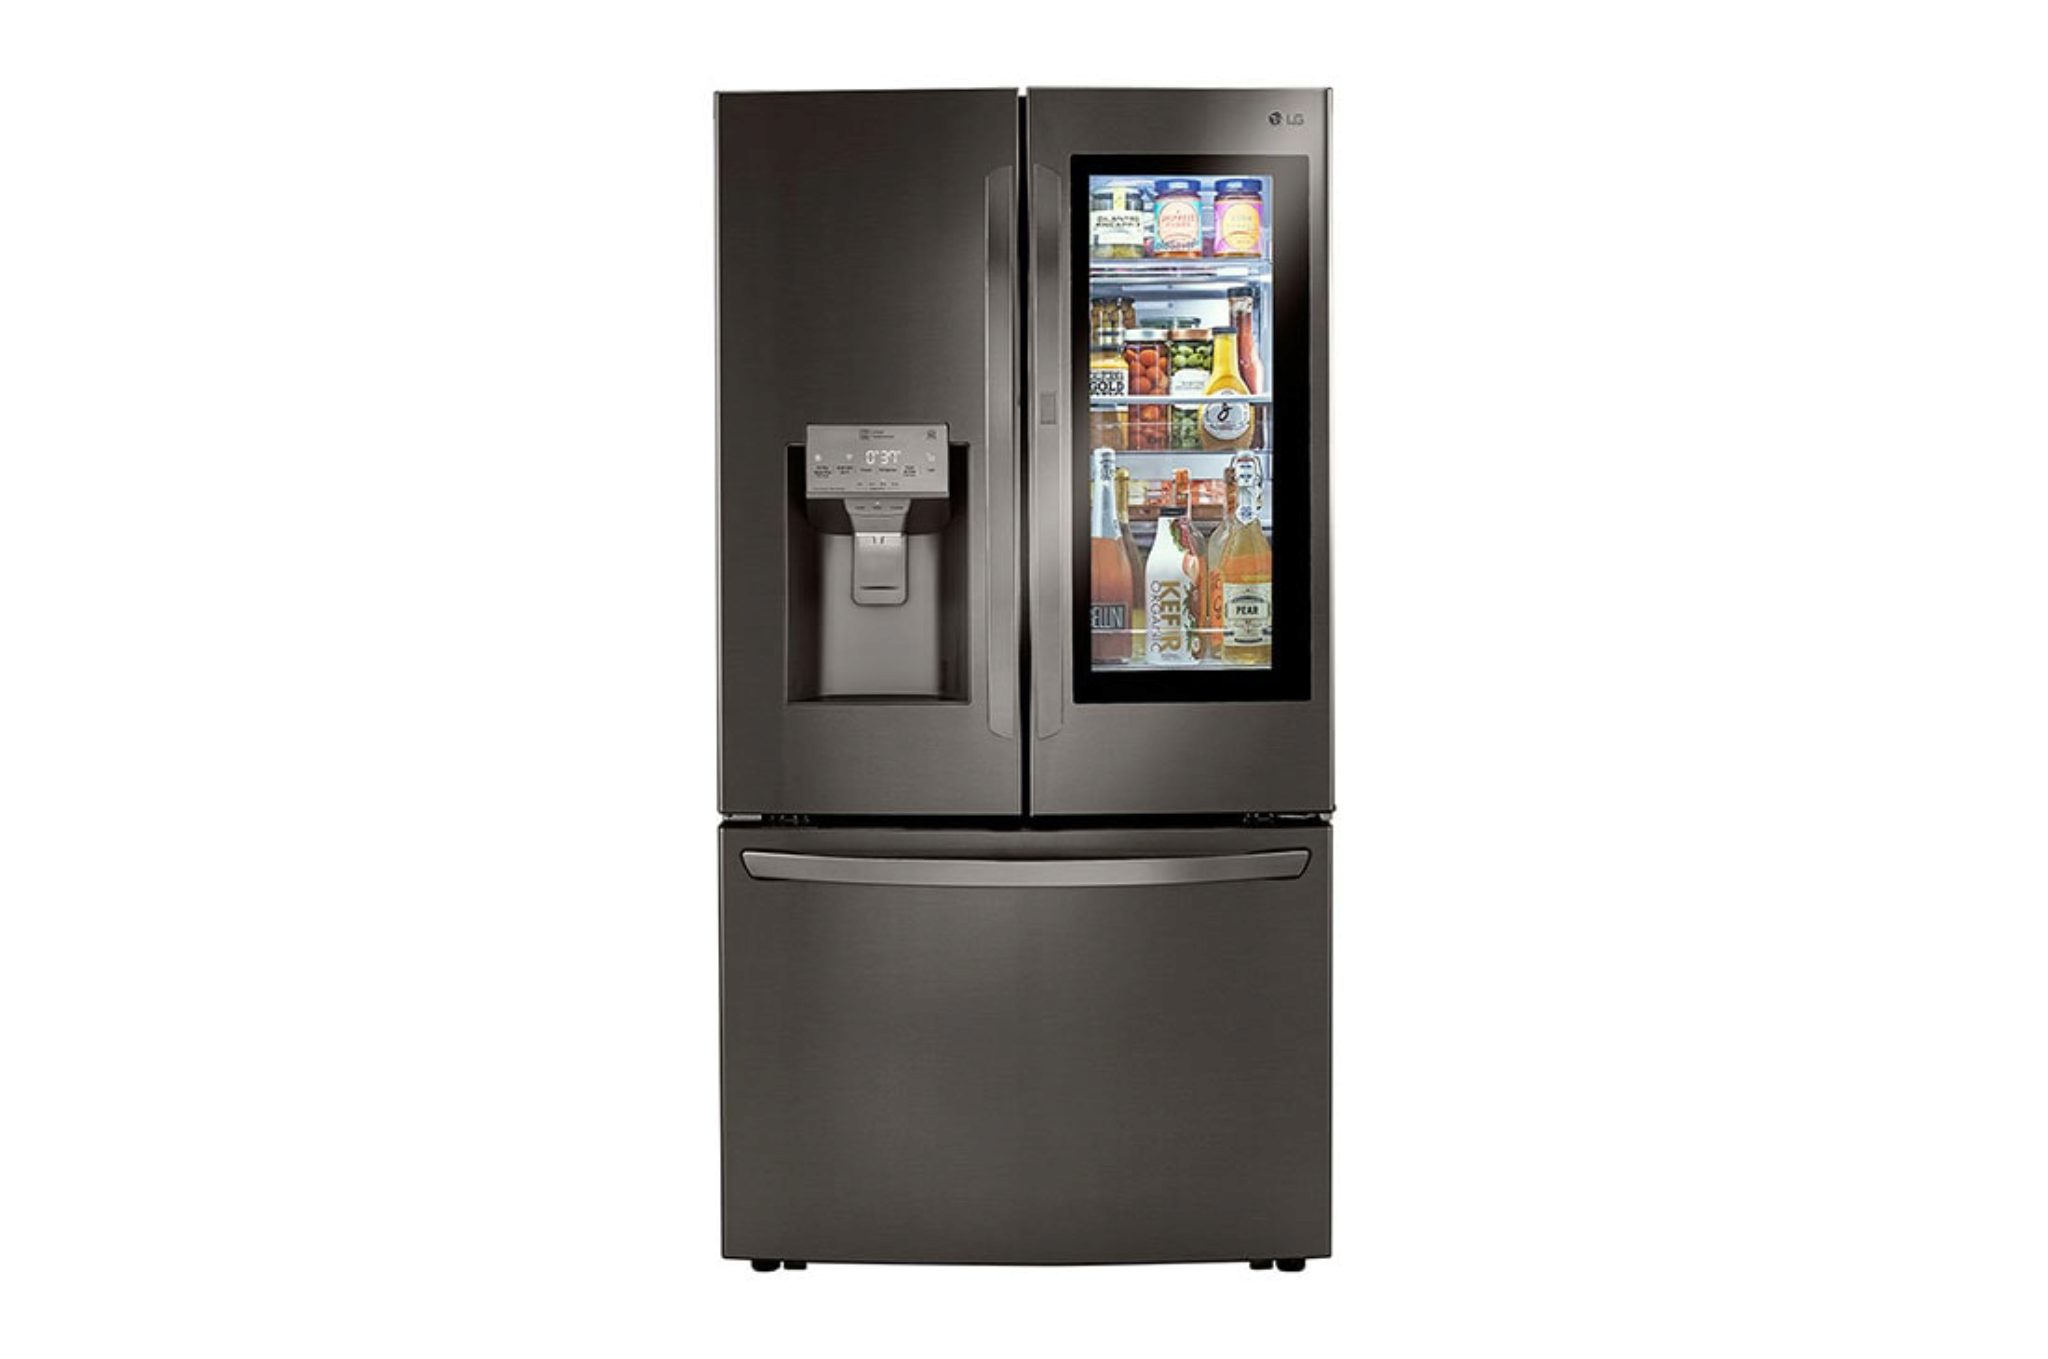 Comment Réinitialiser Les Machines à Glaçons De Réfrigérateur LG